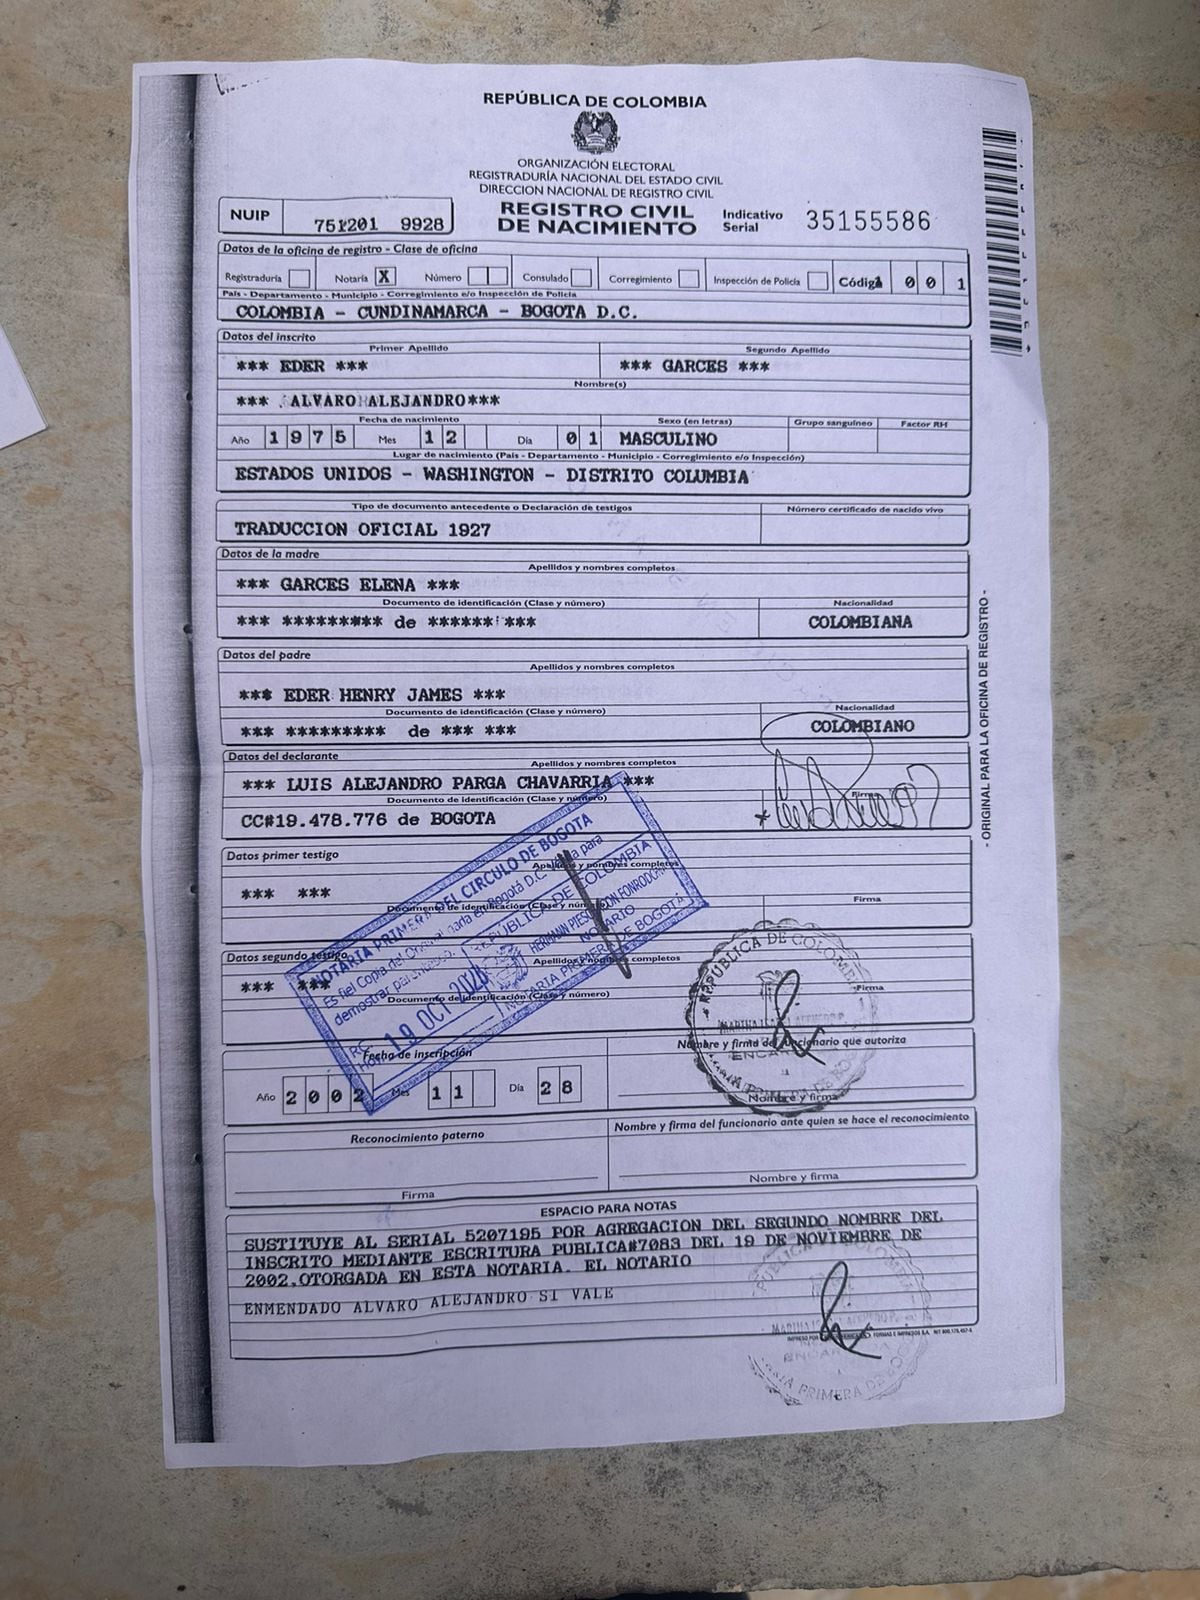 Este sería el registro civil del candidato Alejandro Eder recolectado por el congresista Alejandro Ocampo.